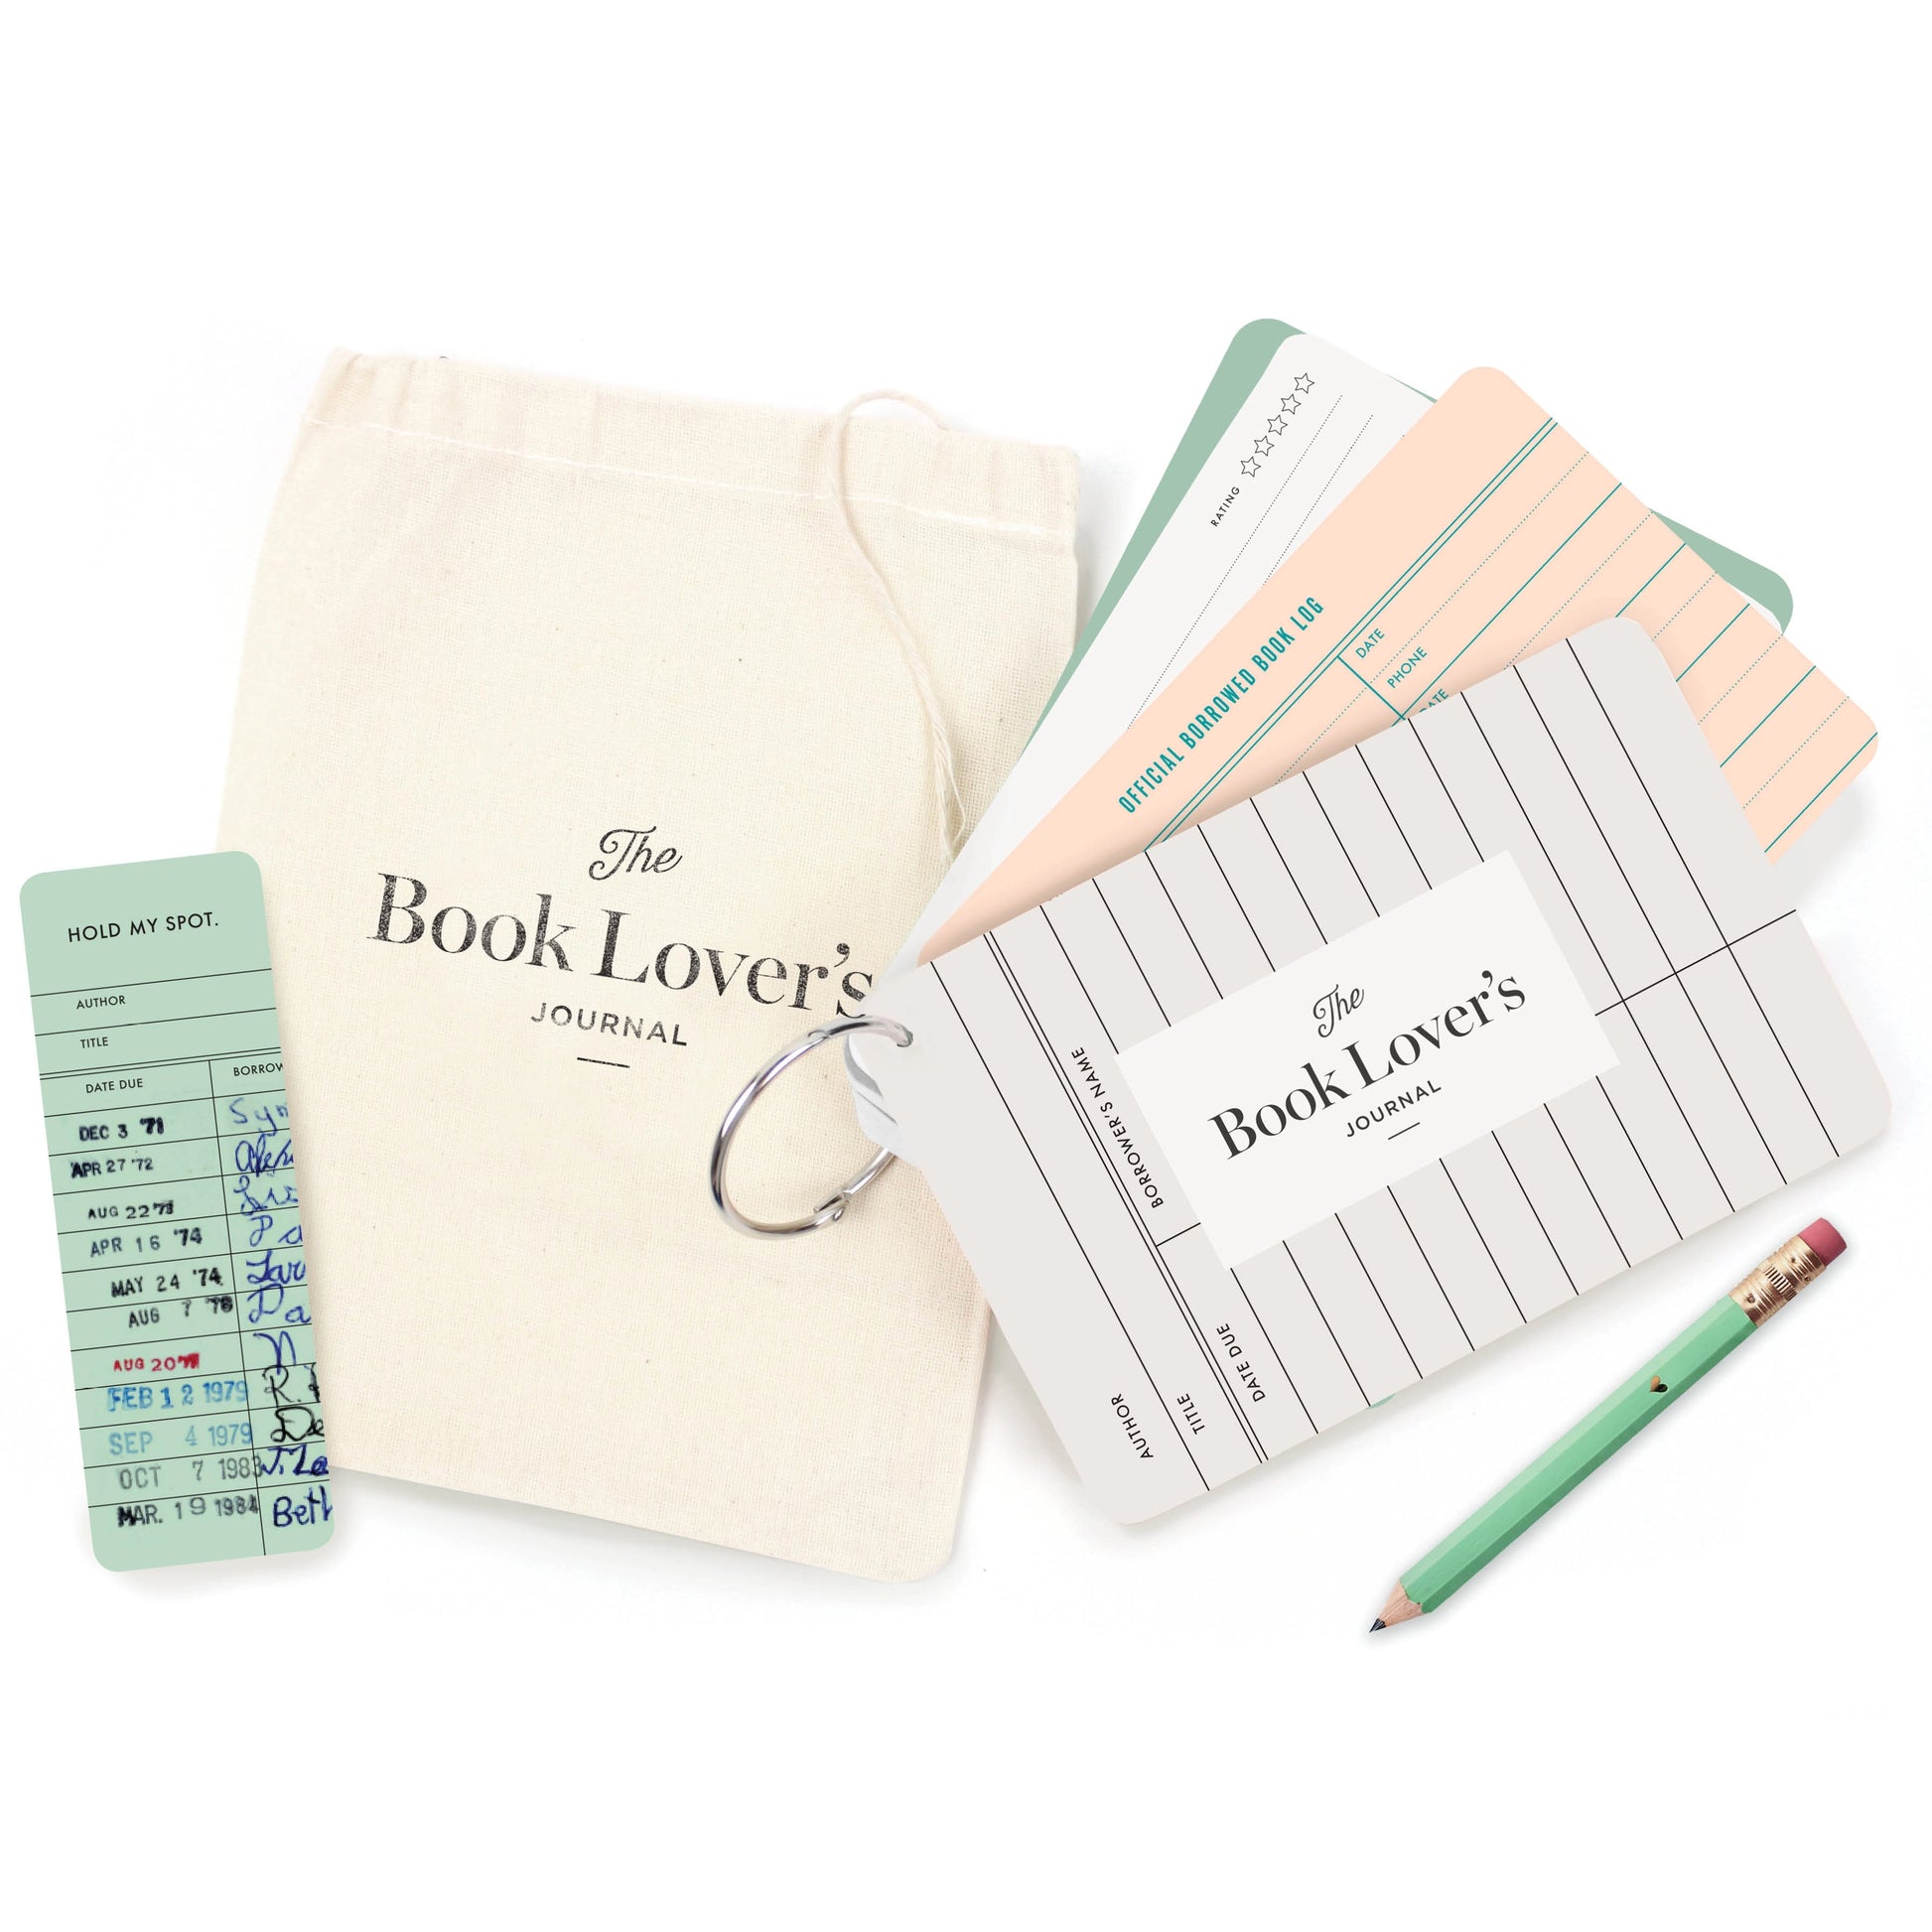 The Book Lover's Journal - Heartfelt Gift Box